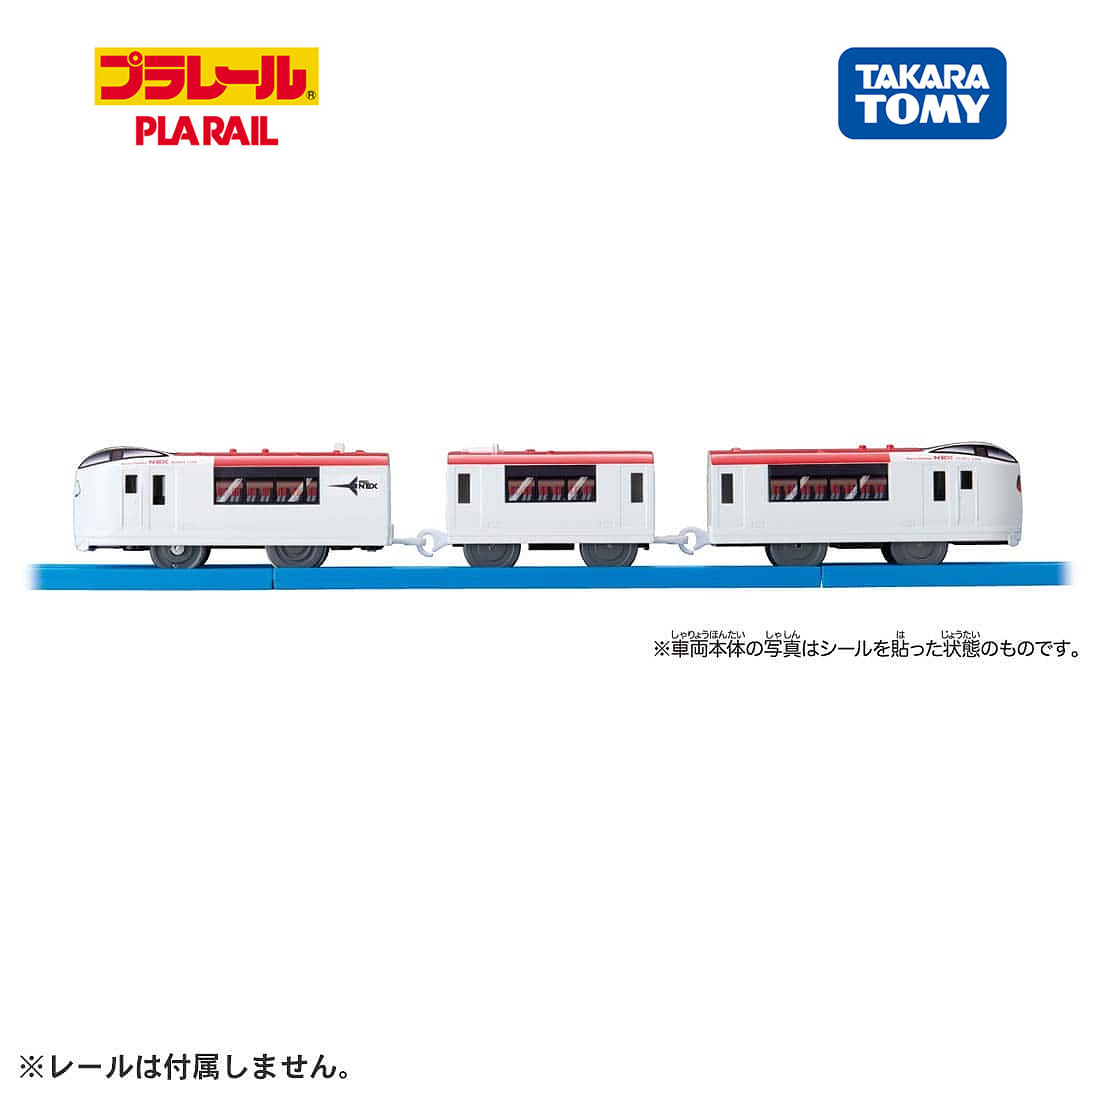 Mô hình tàu điện Takara Tomy Es-06 Narita Express chạy pin loại to